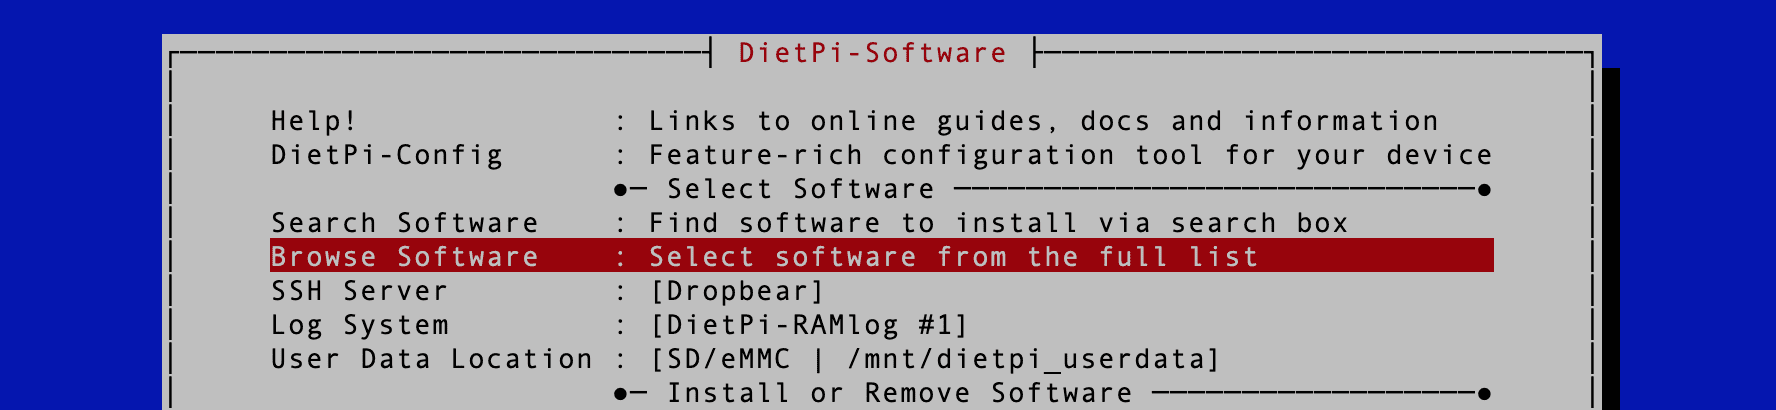 dietpi software option